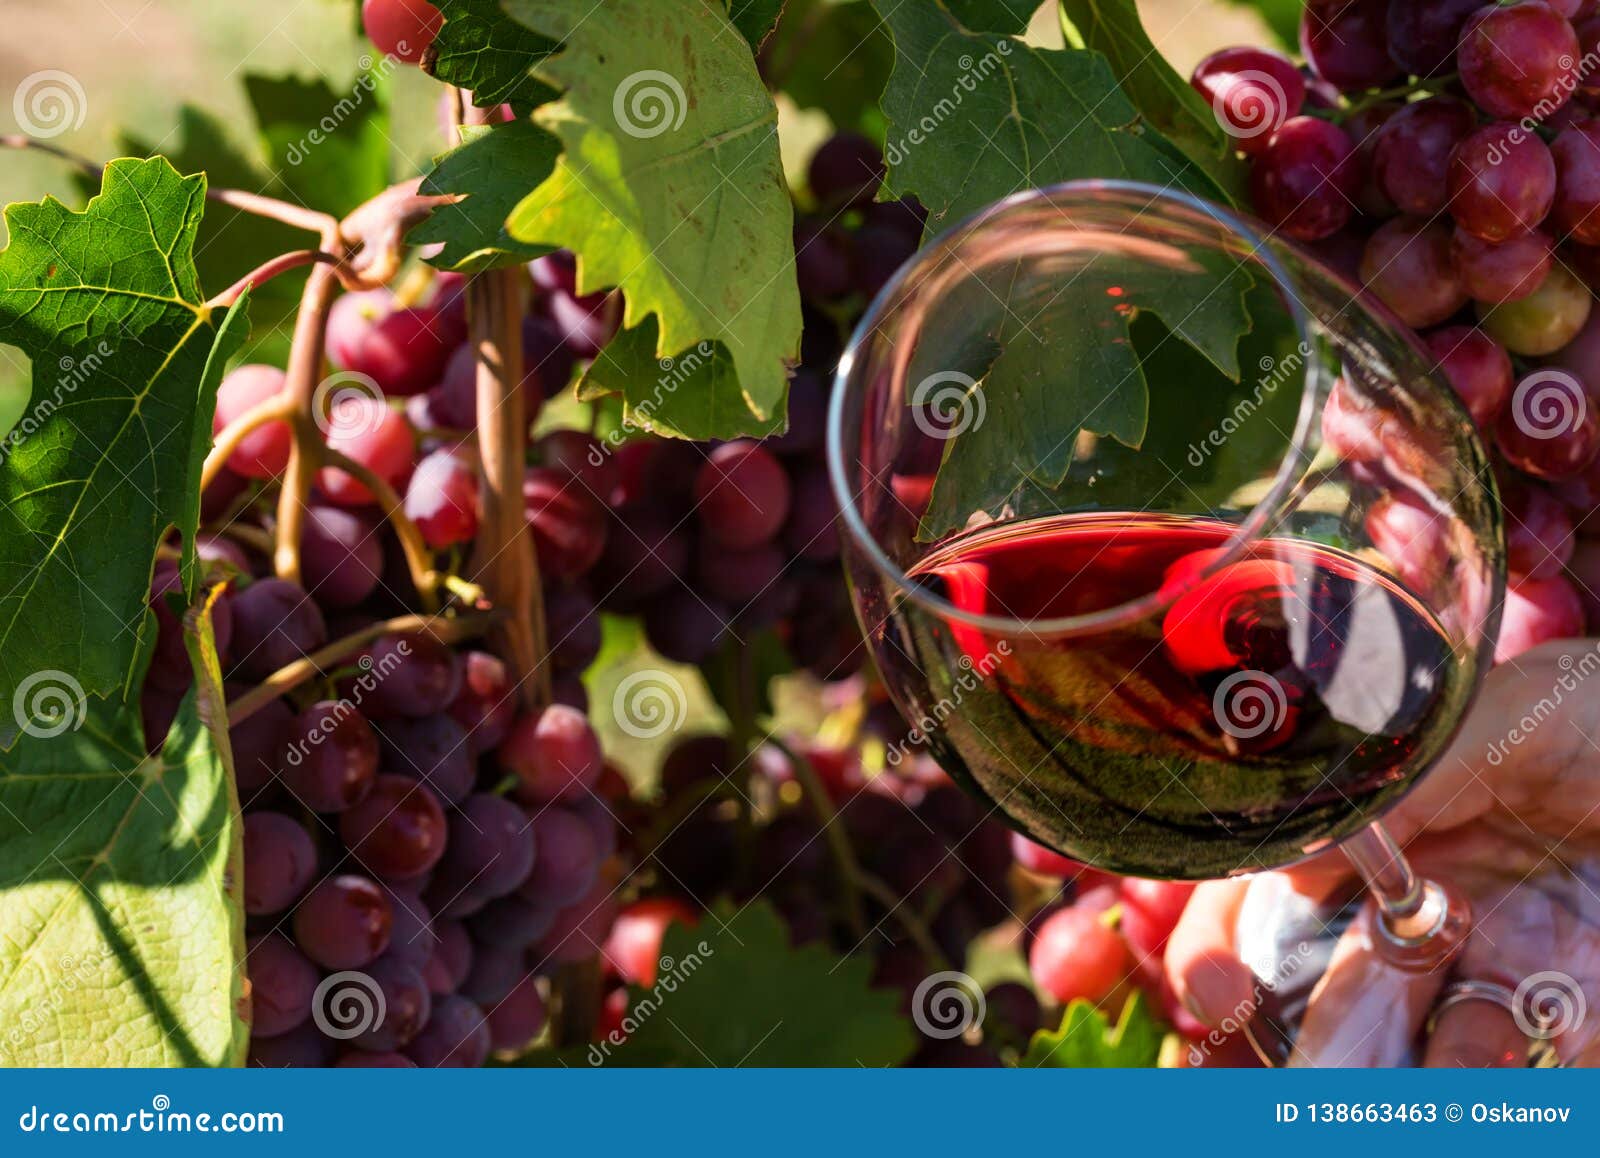 Сорт виноградного вина